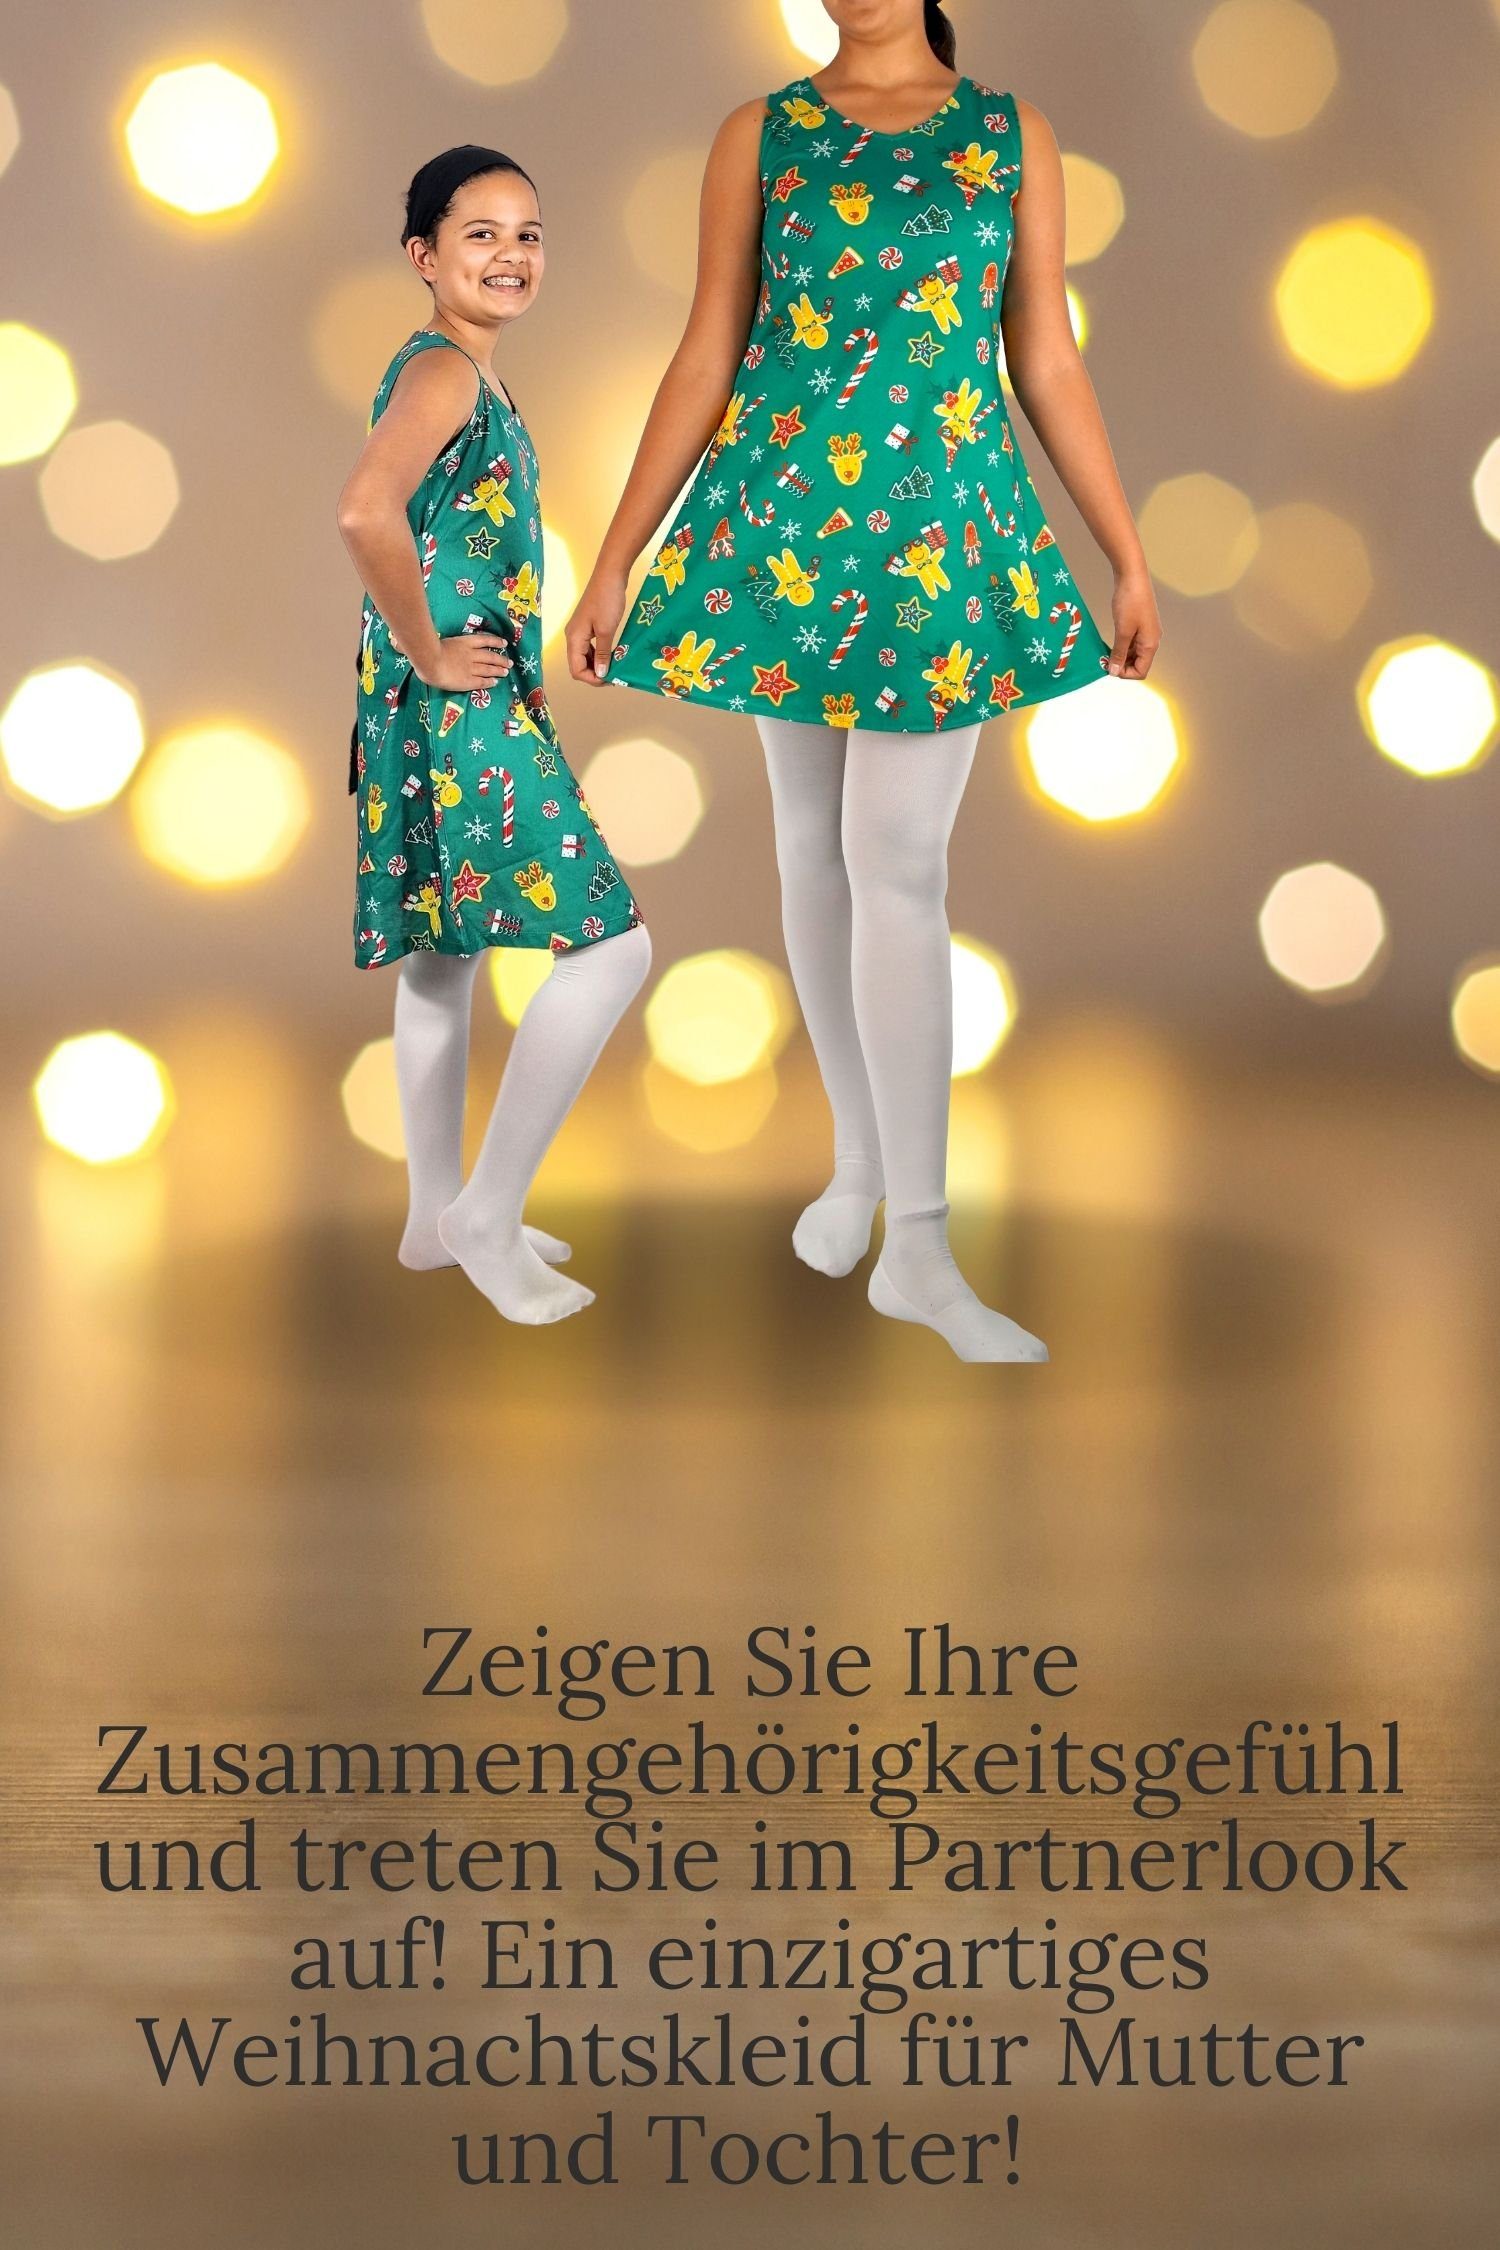 Festtagskleid bedruck Weihnachtsfeier, bunt Mutter-Tochter für Mädchen Berlinsel Weihnachtskleid Abendkleid Weihnachtsfoto, Partykleid Kleid